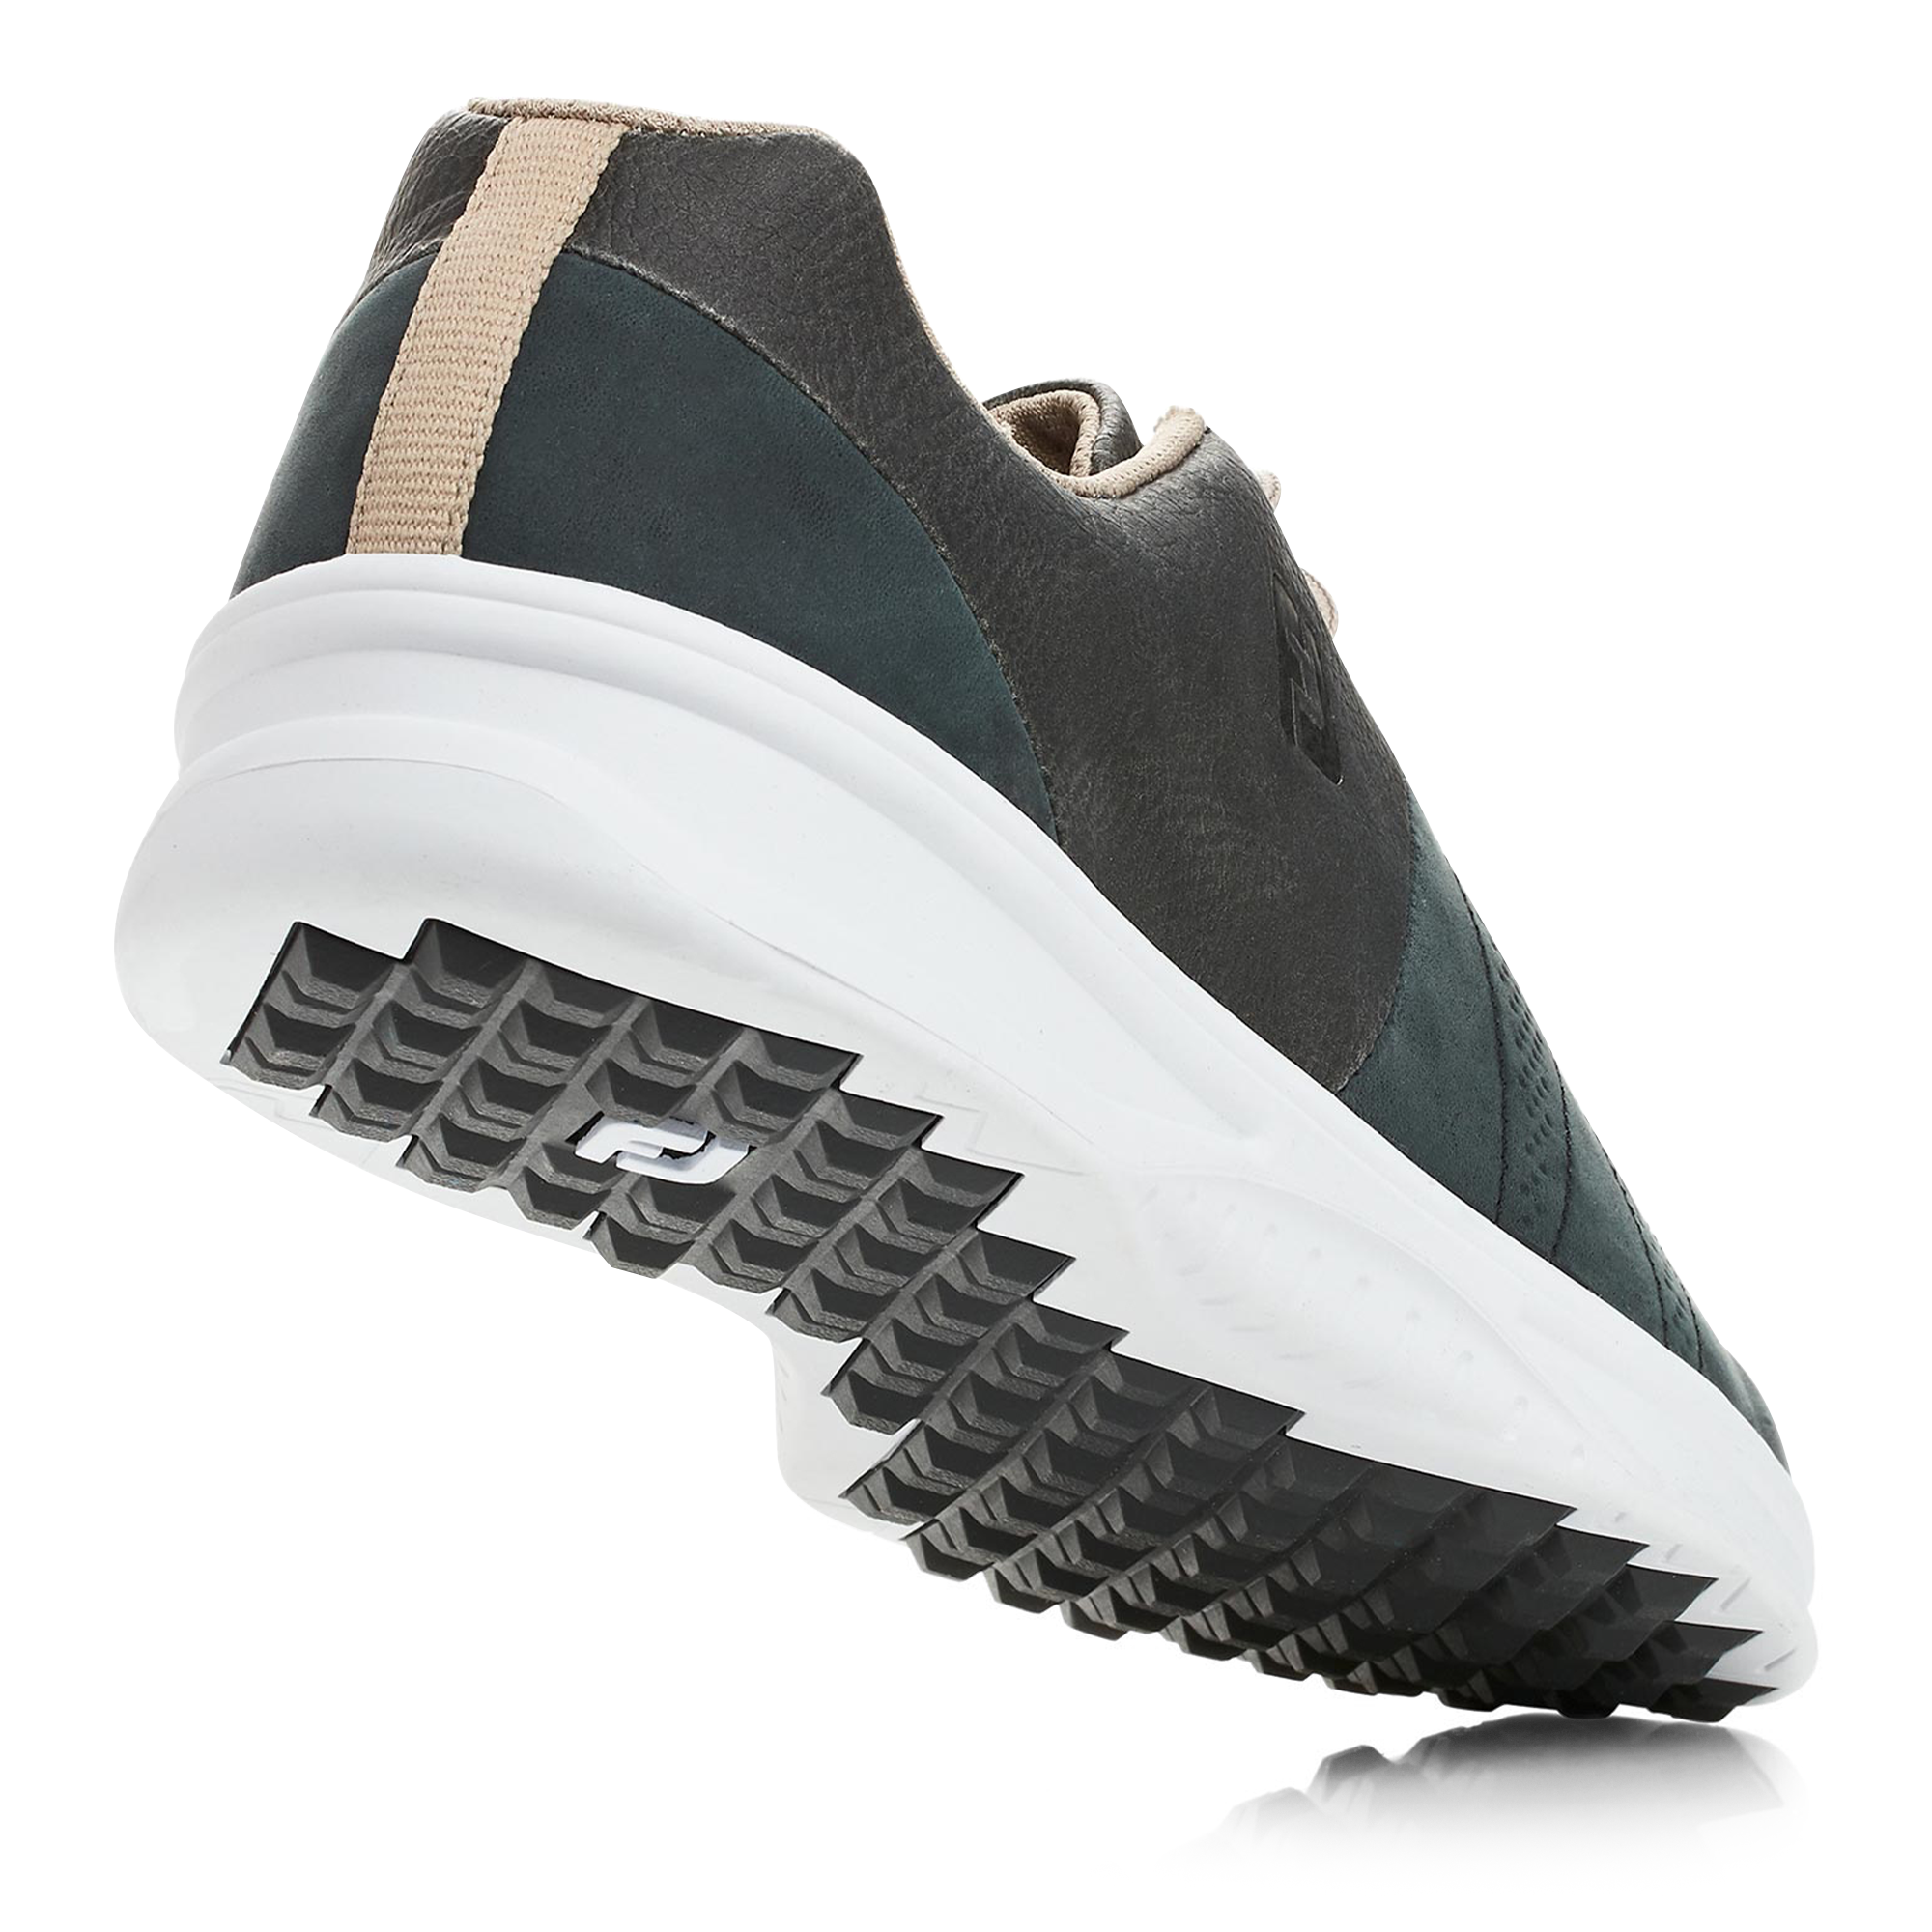 footjoy contour golf shoes black 54018